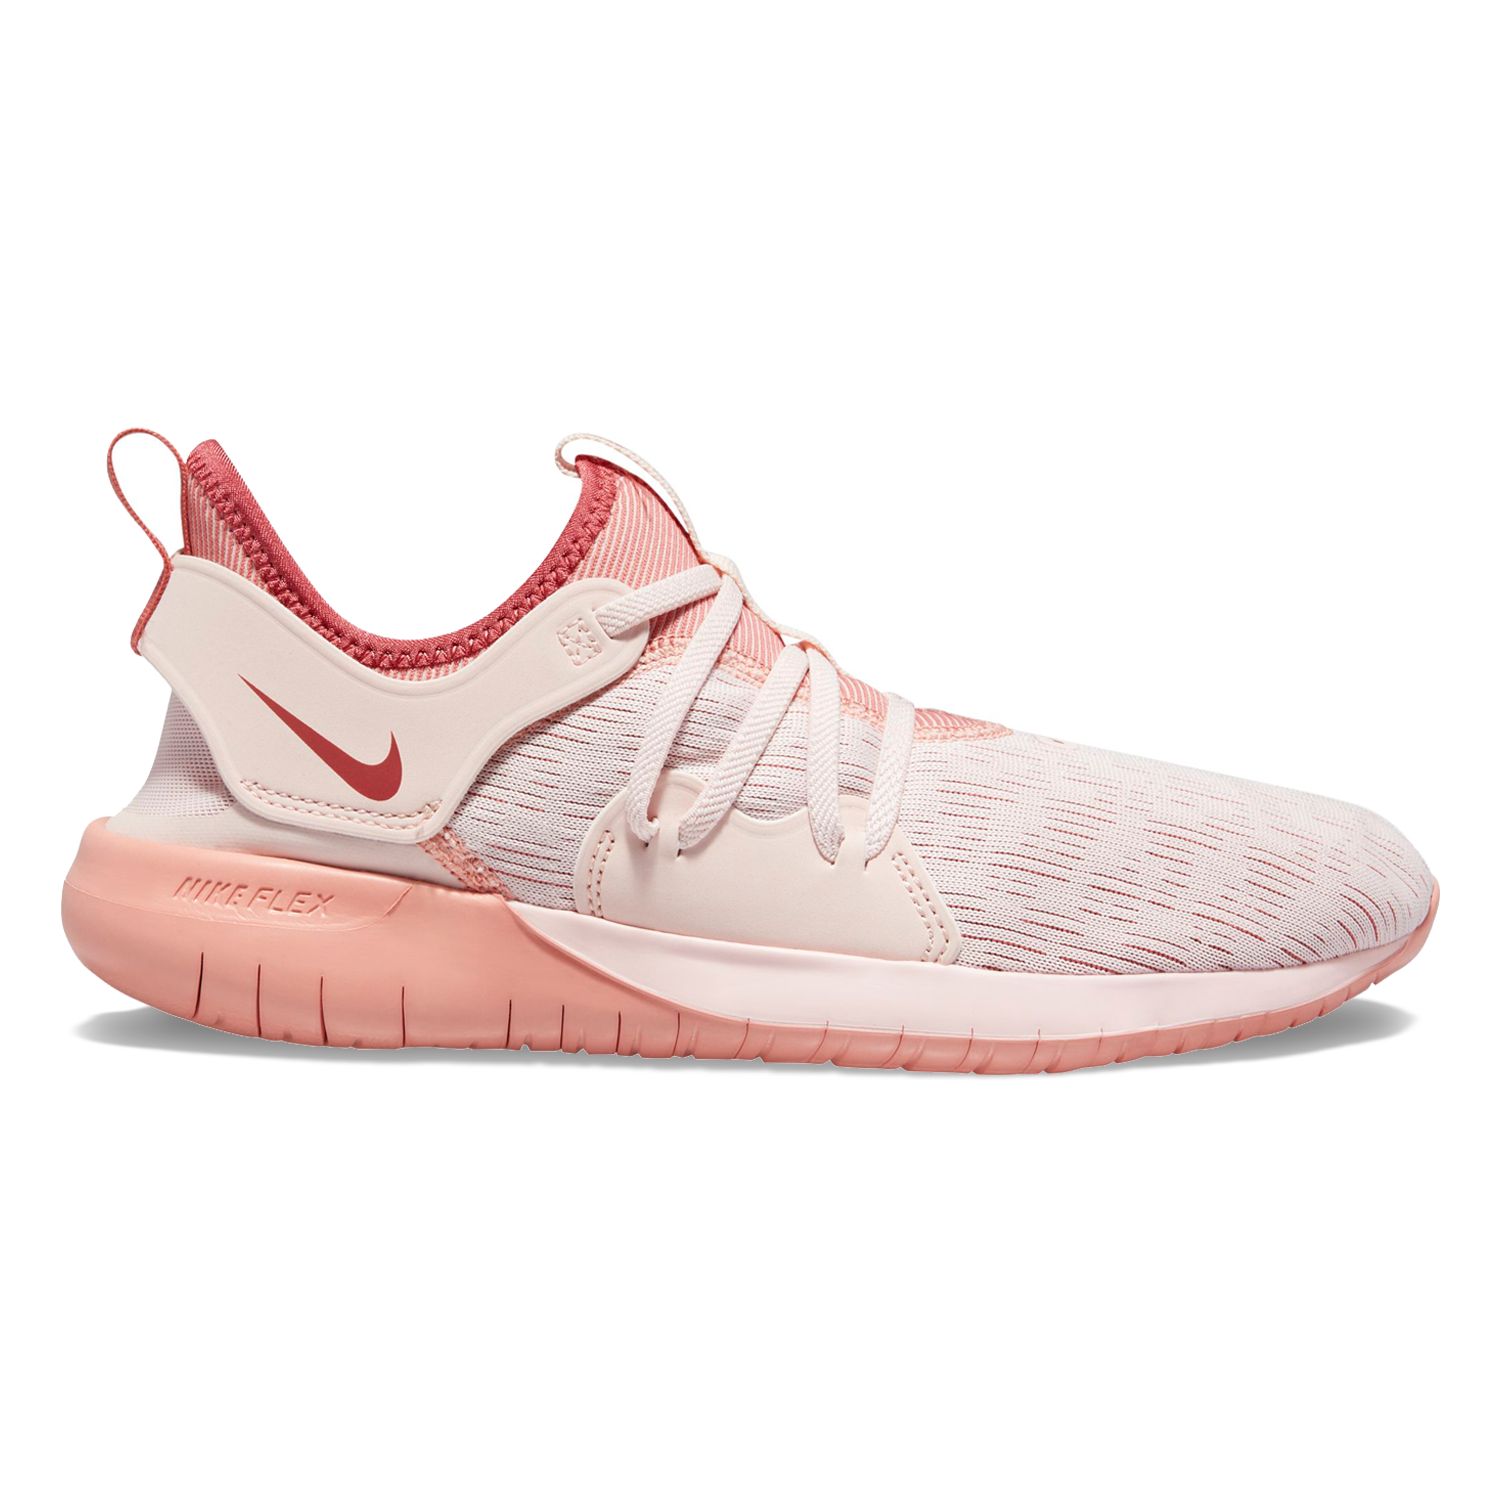 nike flex contact women's running shoes pink